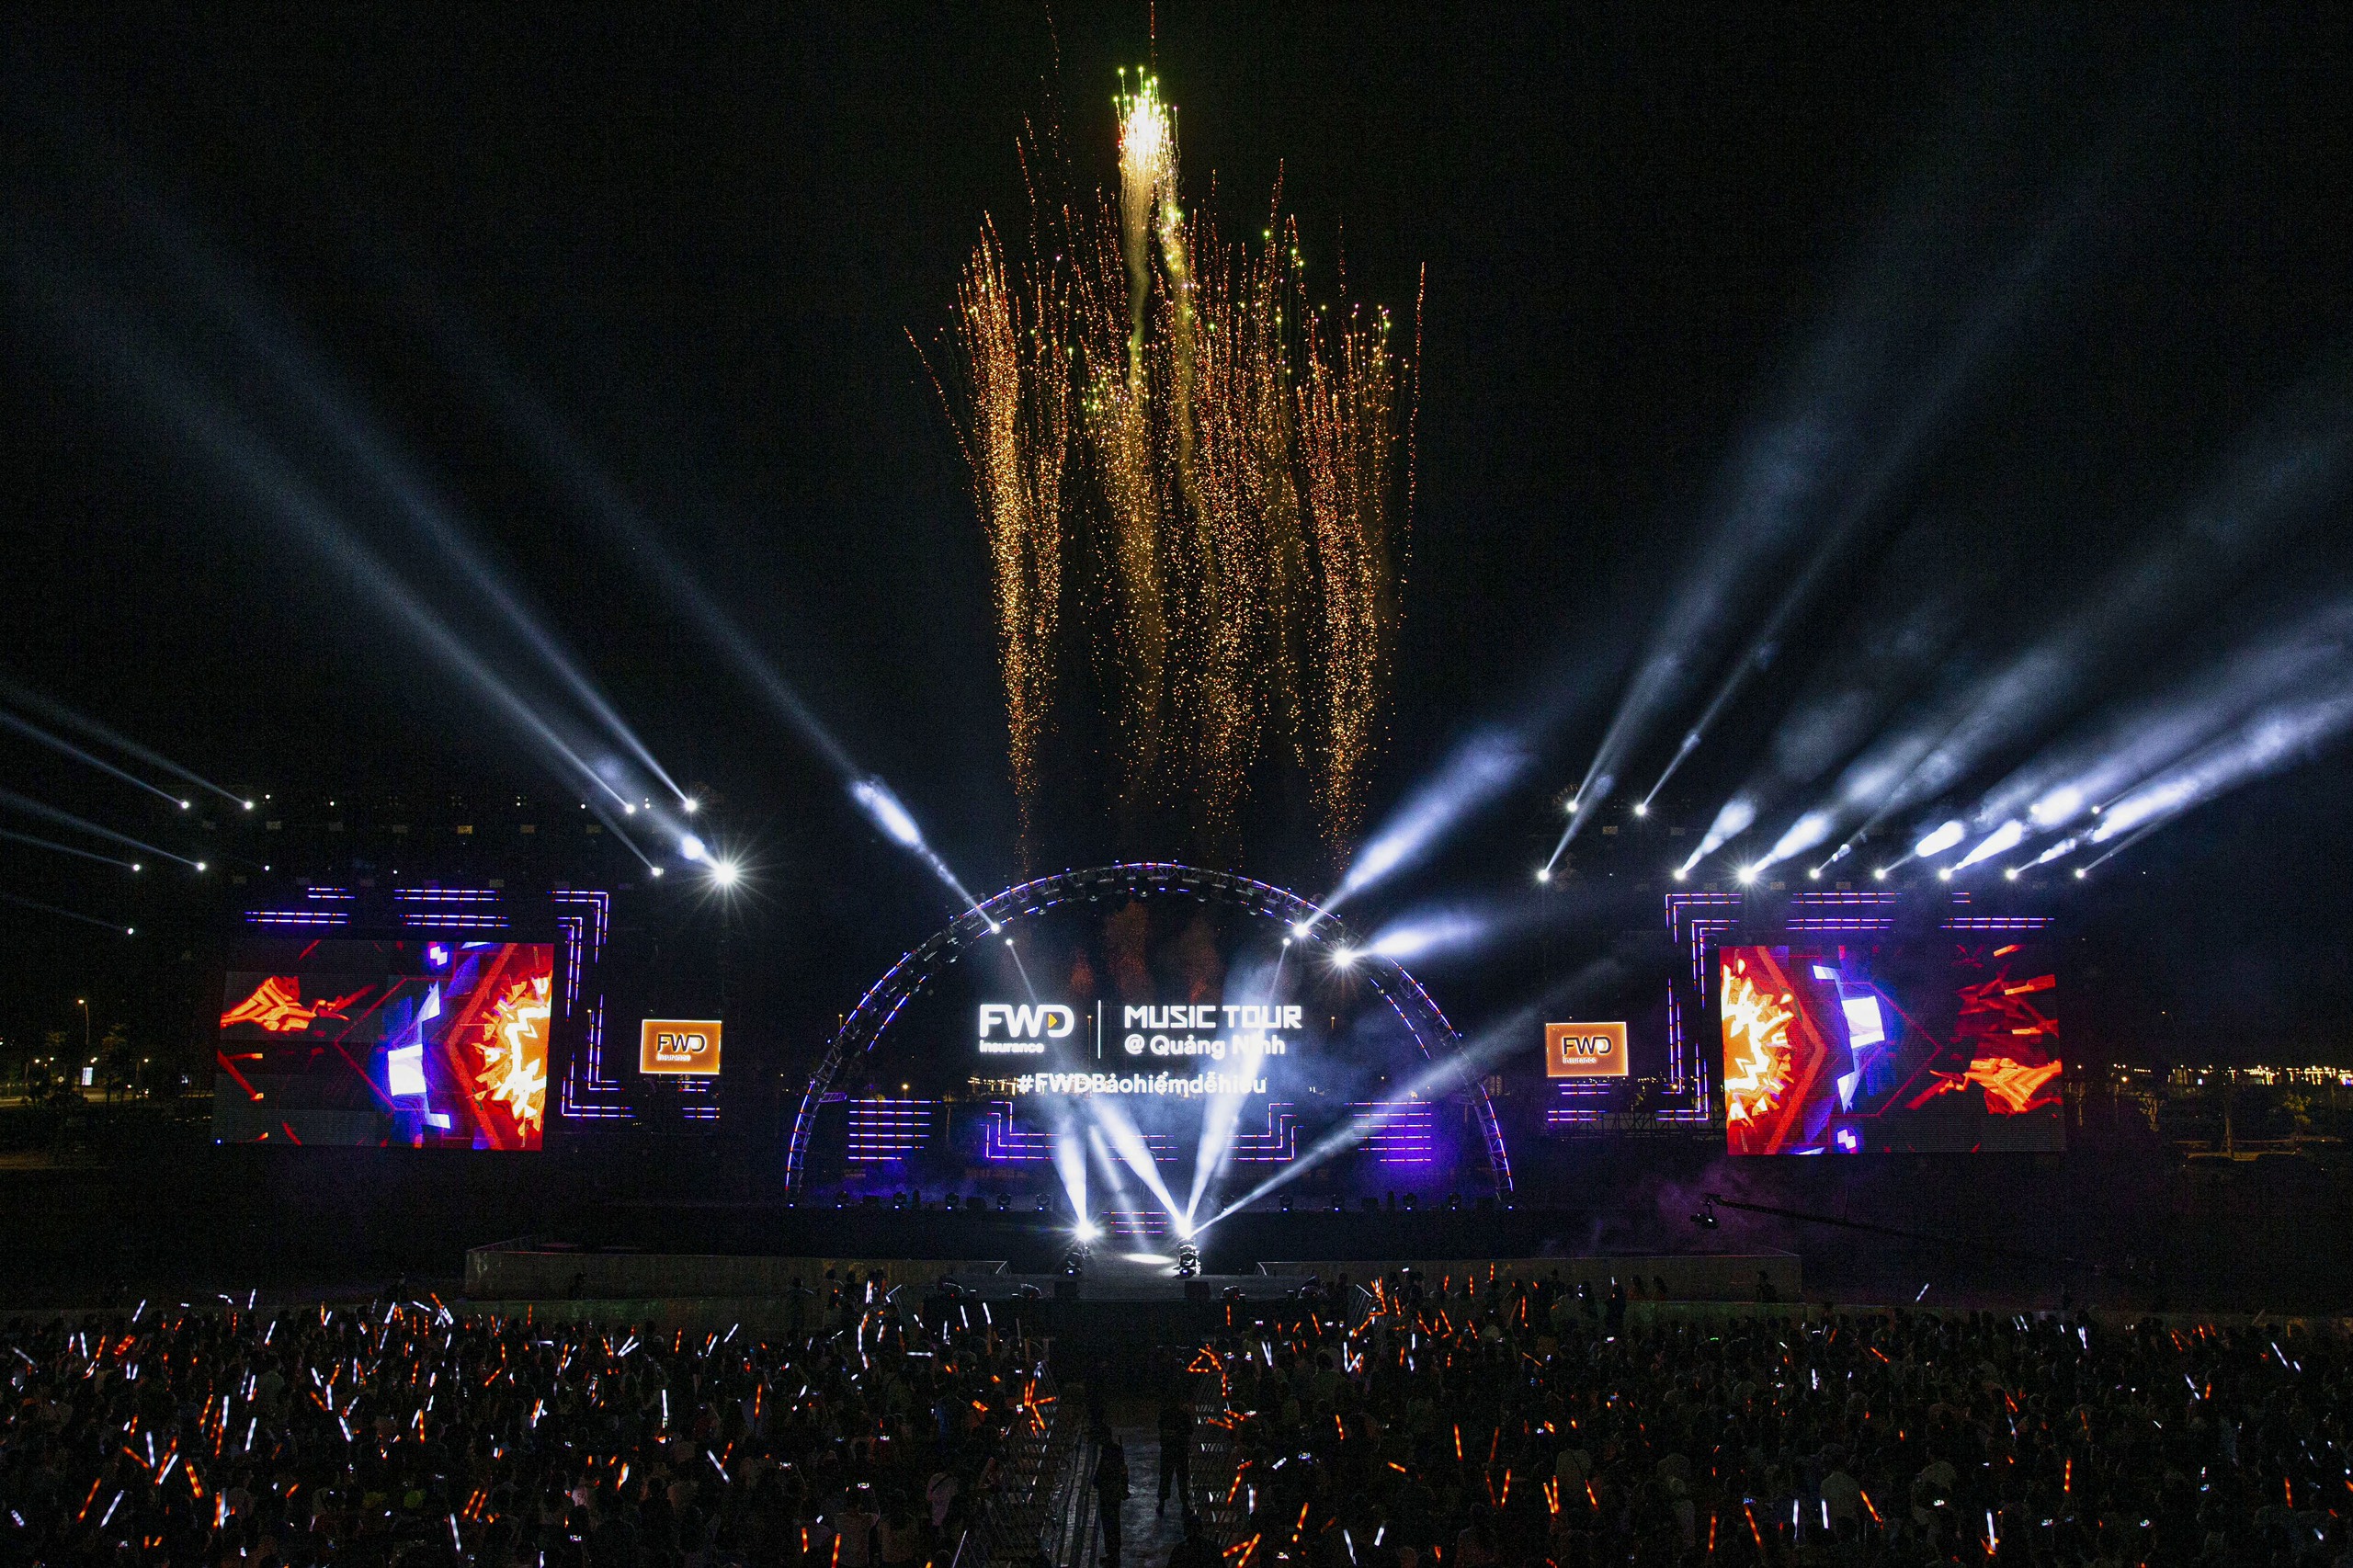 FWD bùng nổ MXH với sự kiện âm nhạc đỉnh cao FWD Music Tour @Quảng Ninh - ảnh 2